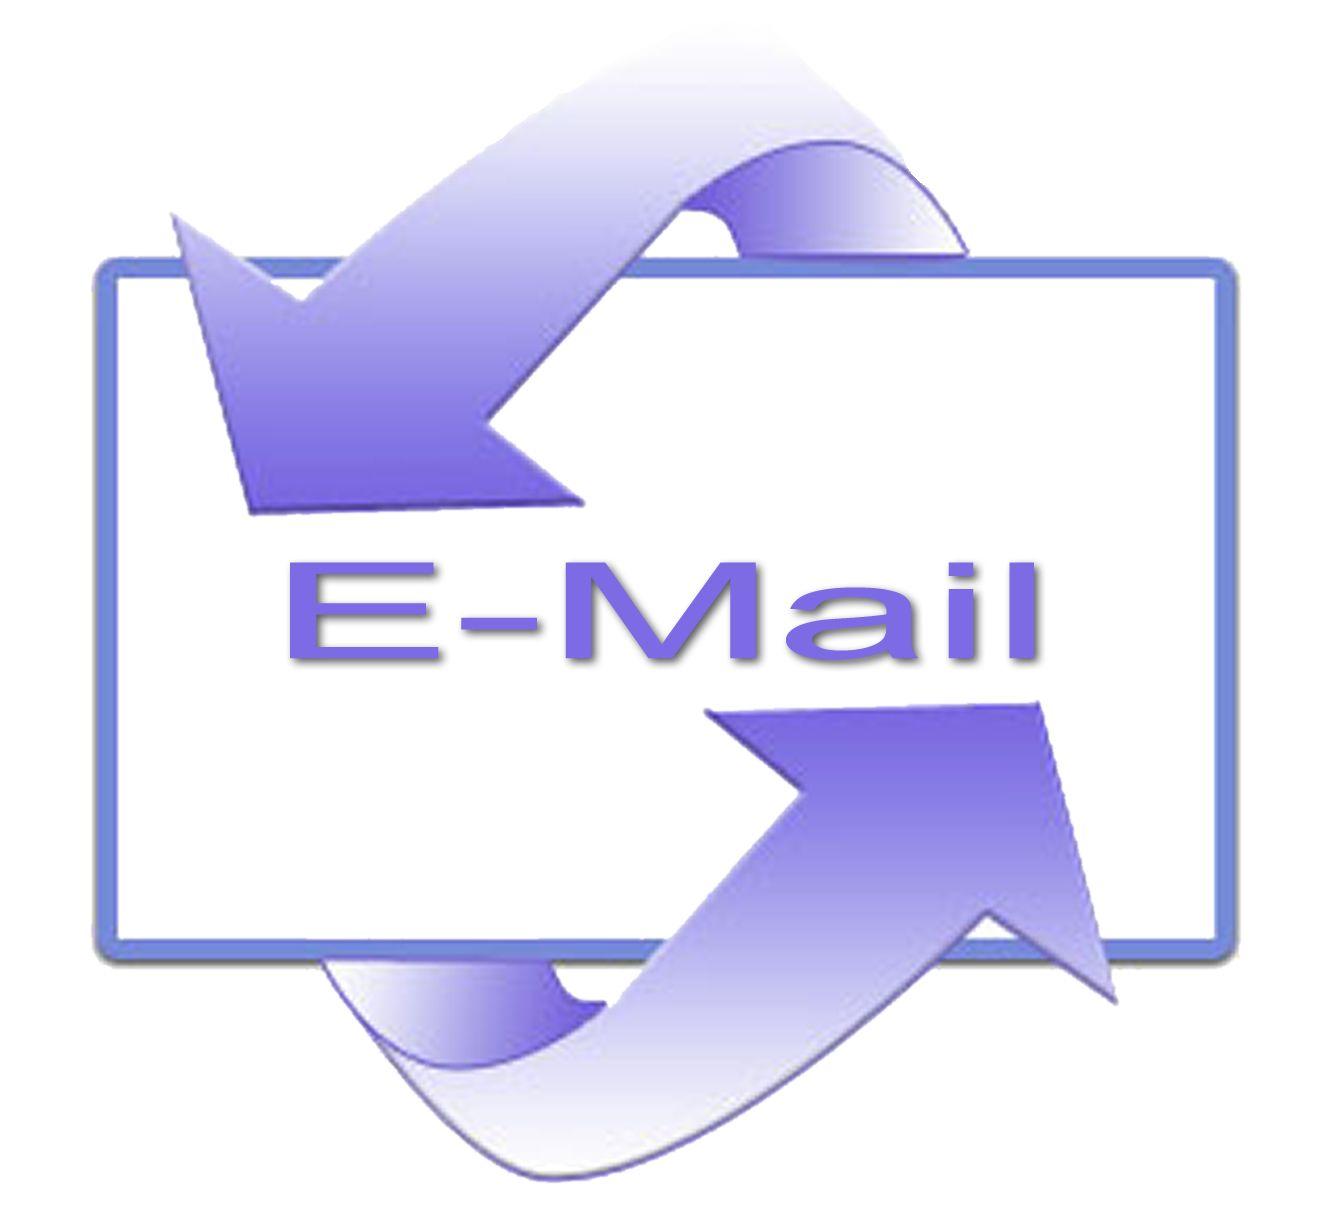 Email Me Logo - Email Logos